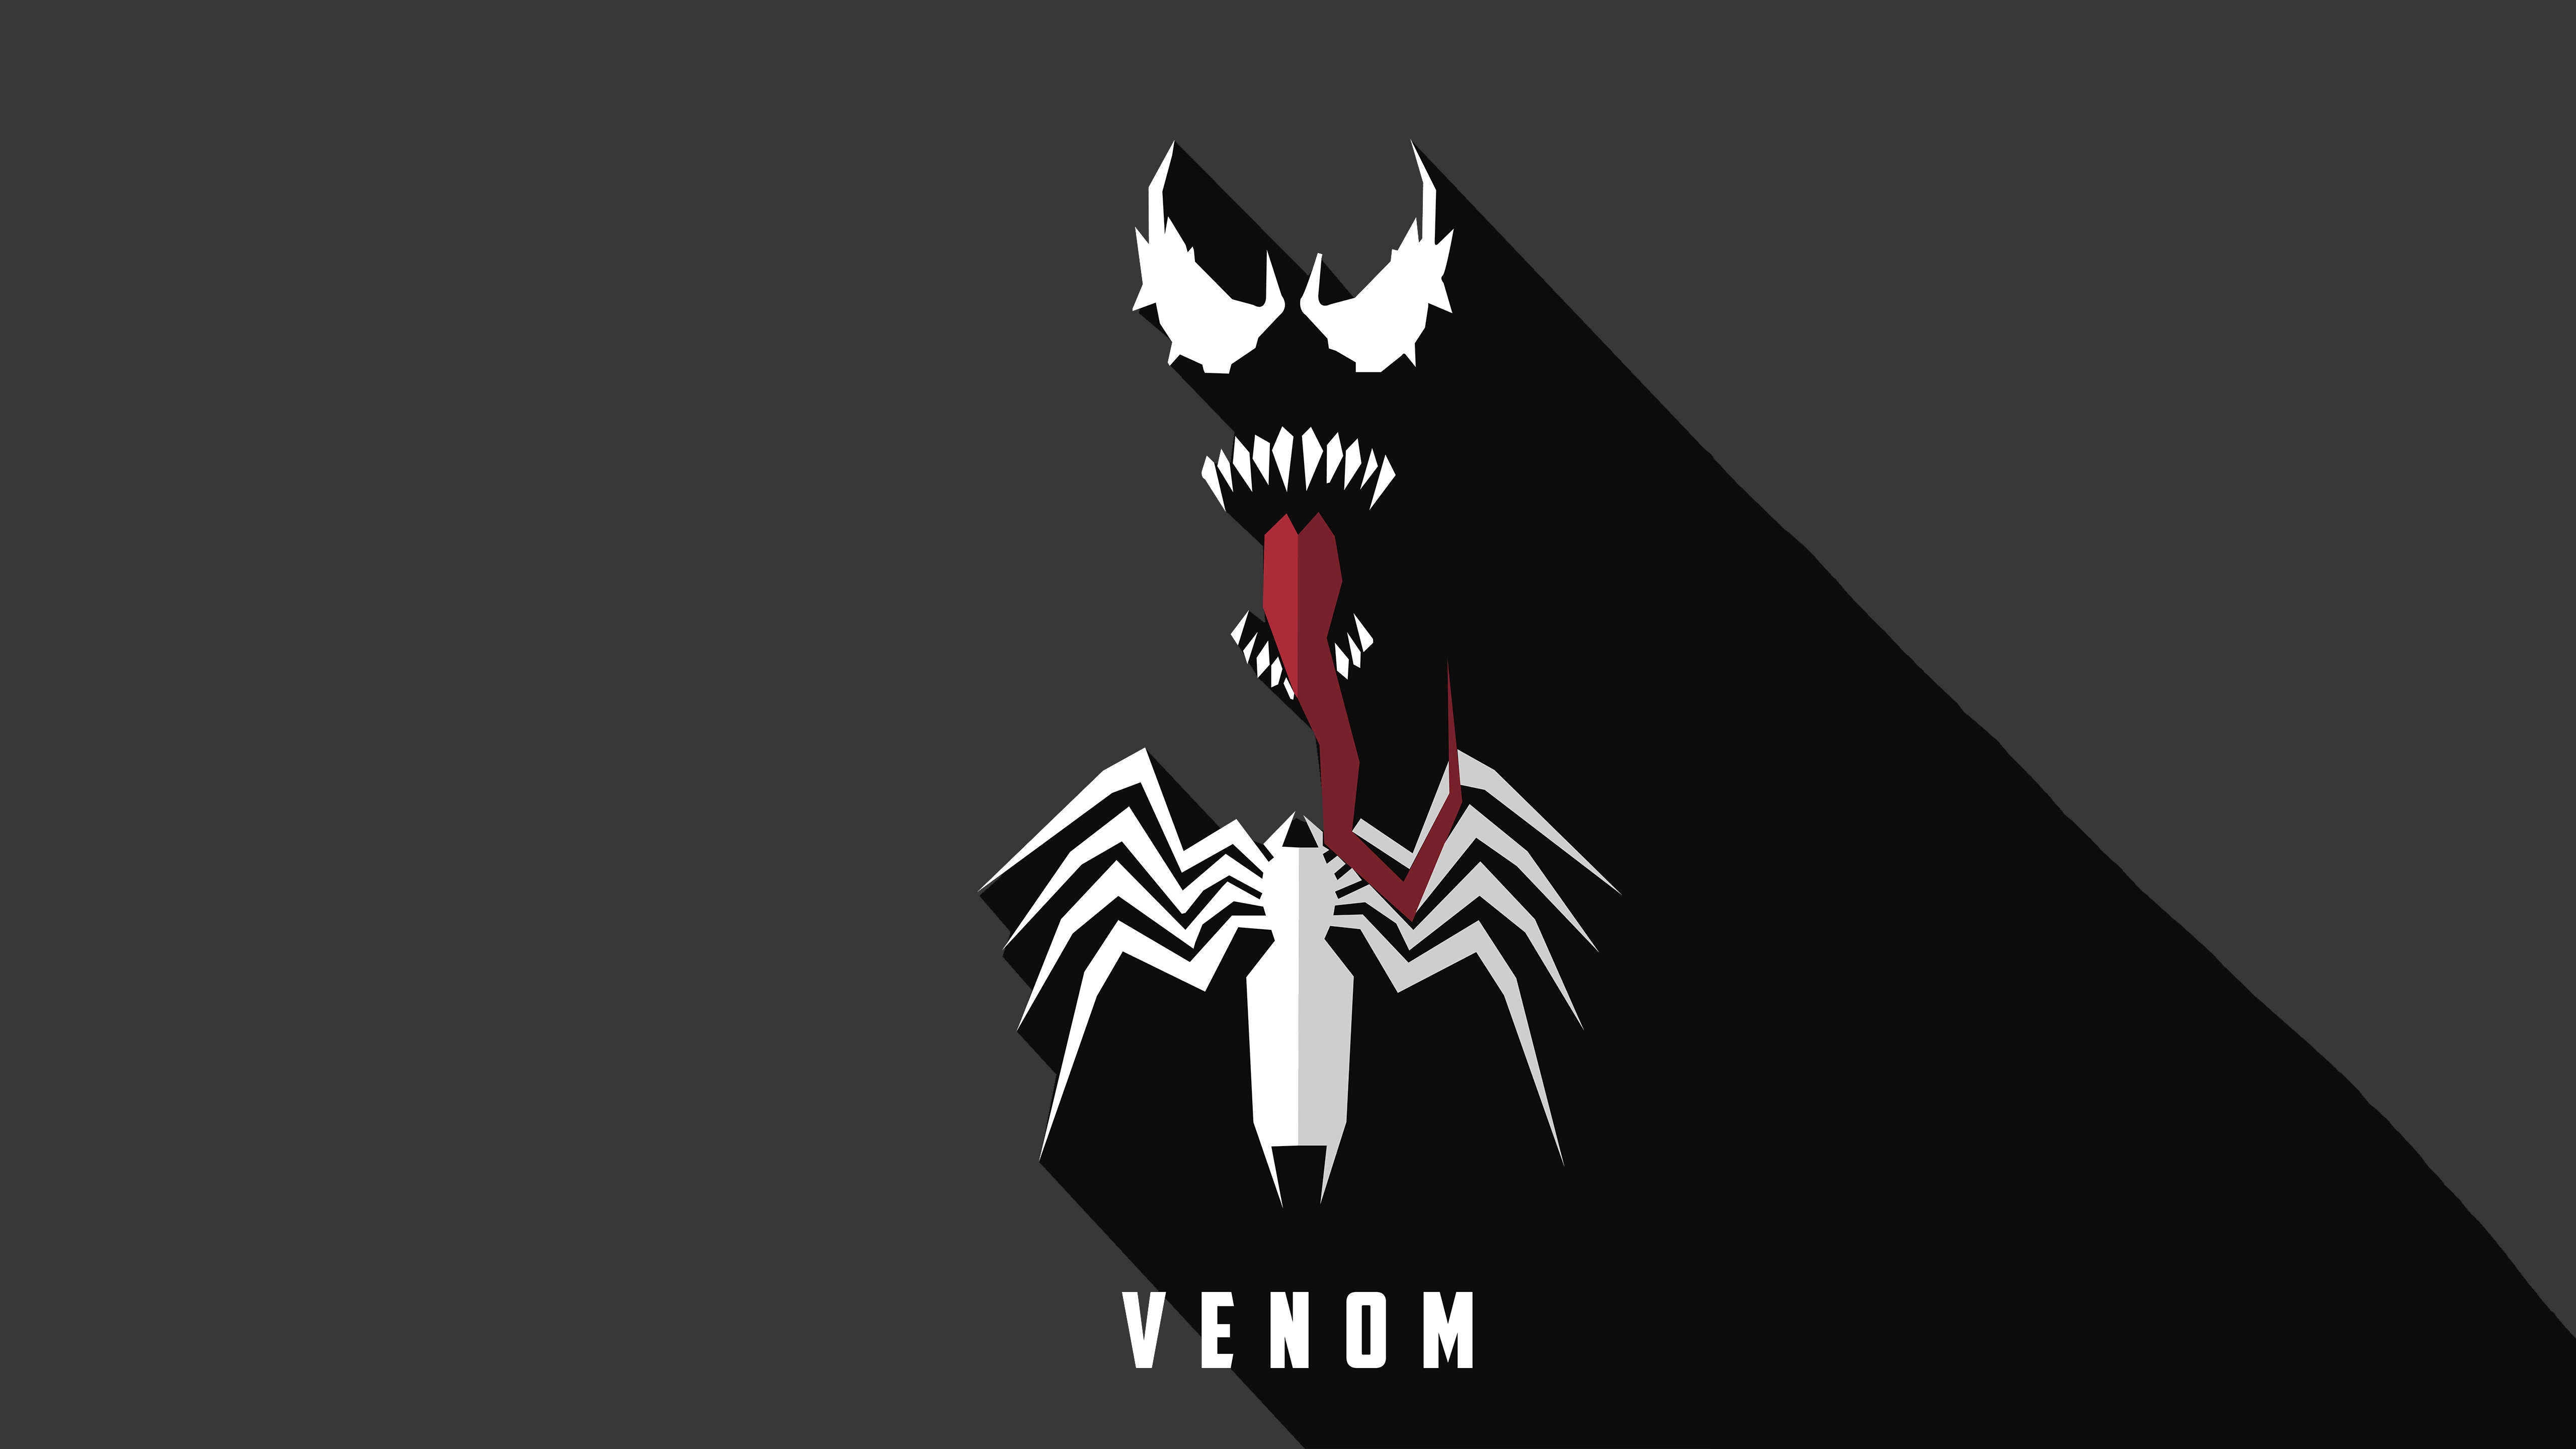 Venom Minimal Art Wallpapers